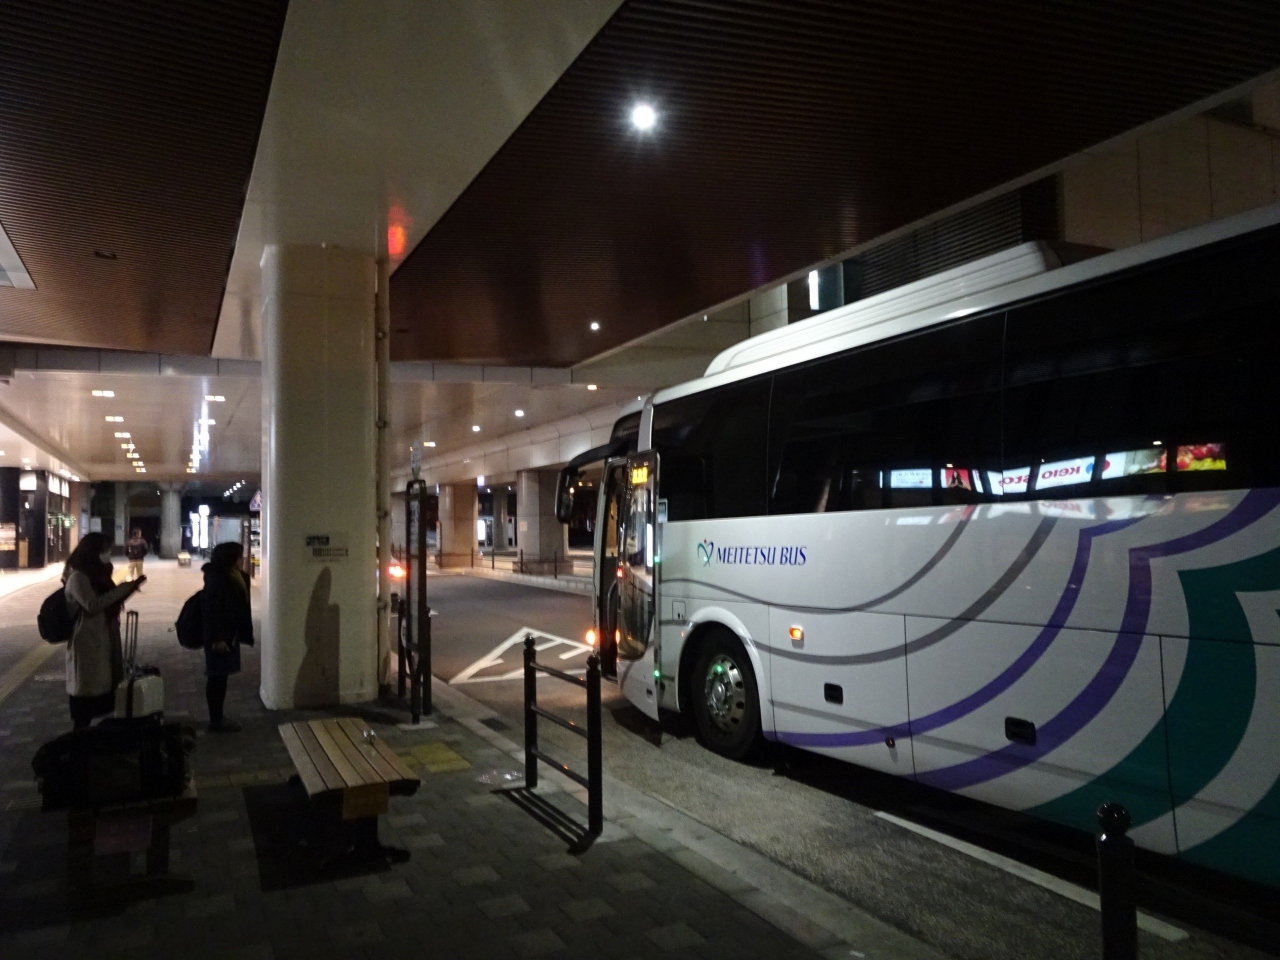 夜行バスで4:50頃に府中駅前に到着。ここで降りるといつも方向感覚を失ってしまいます。。。歩いてJRの府中本町駅へ。